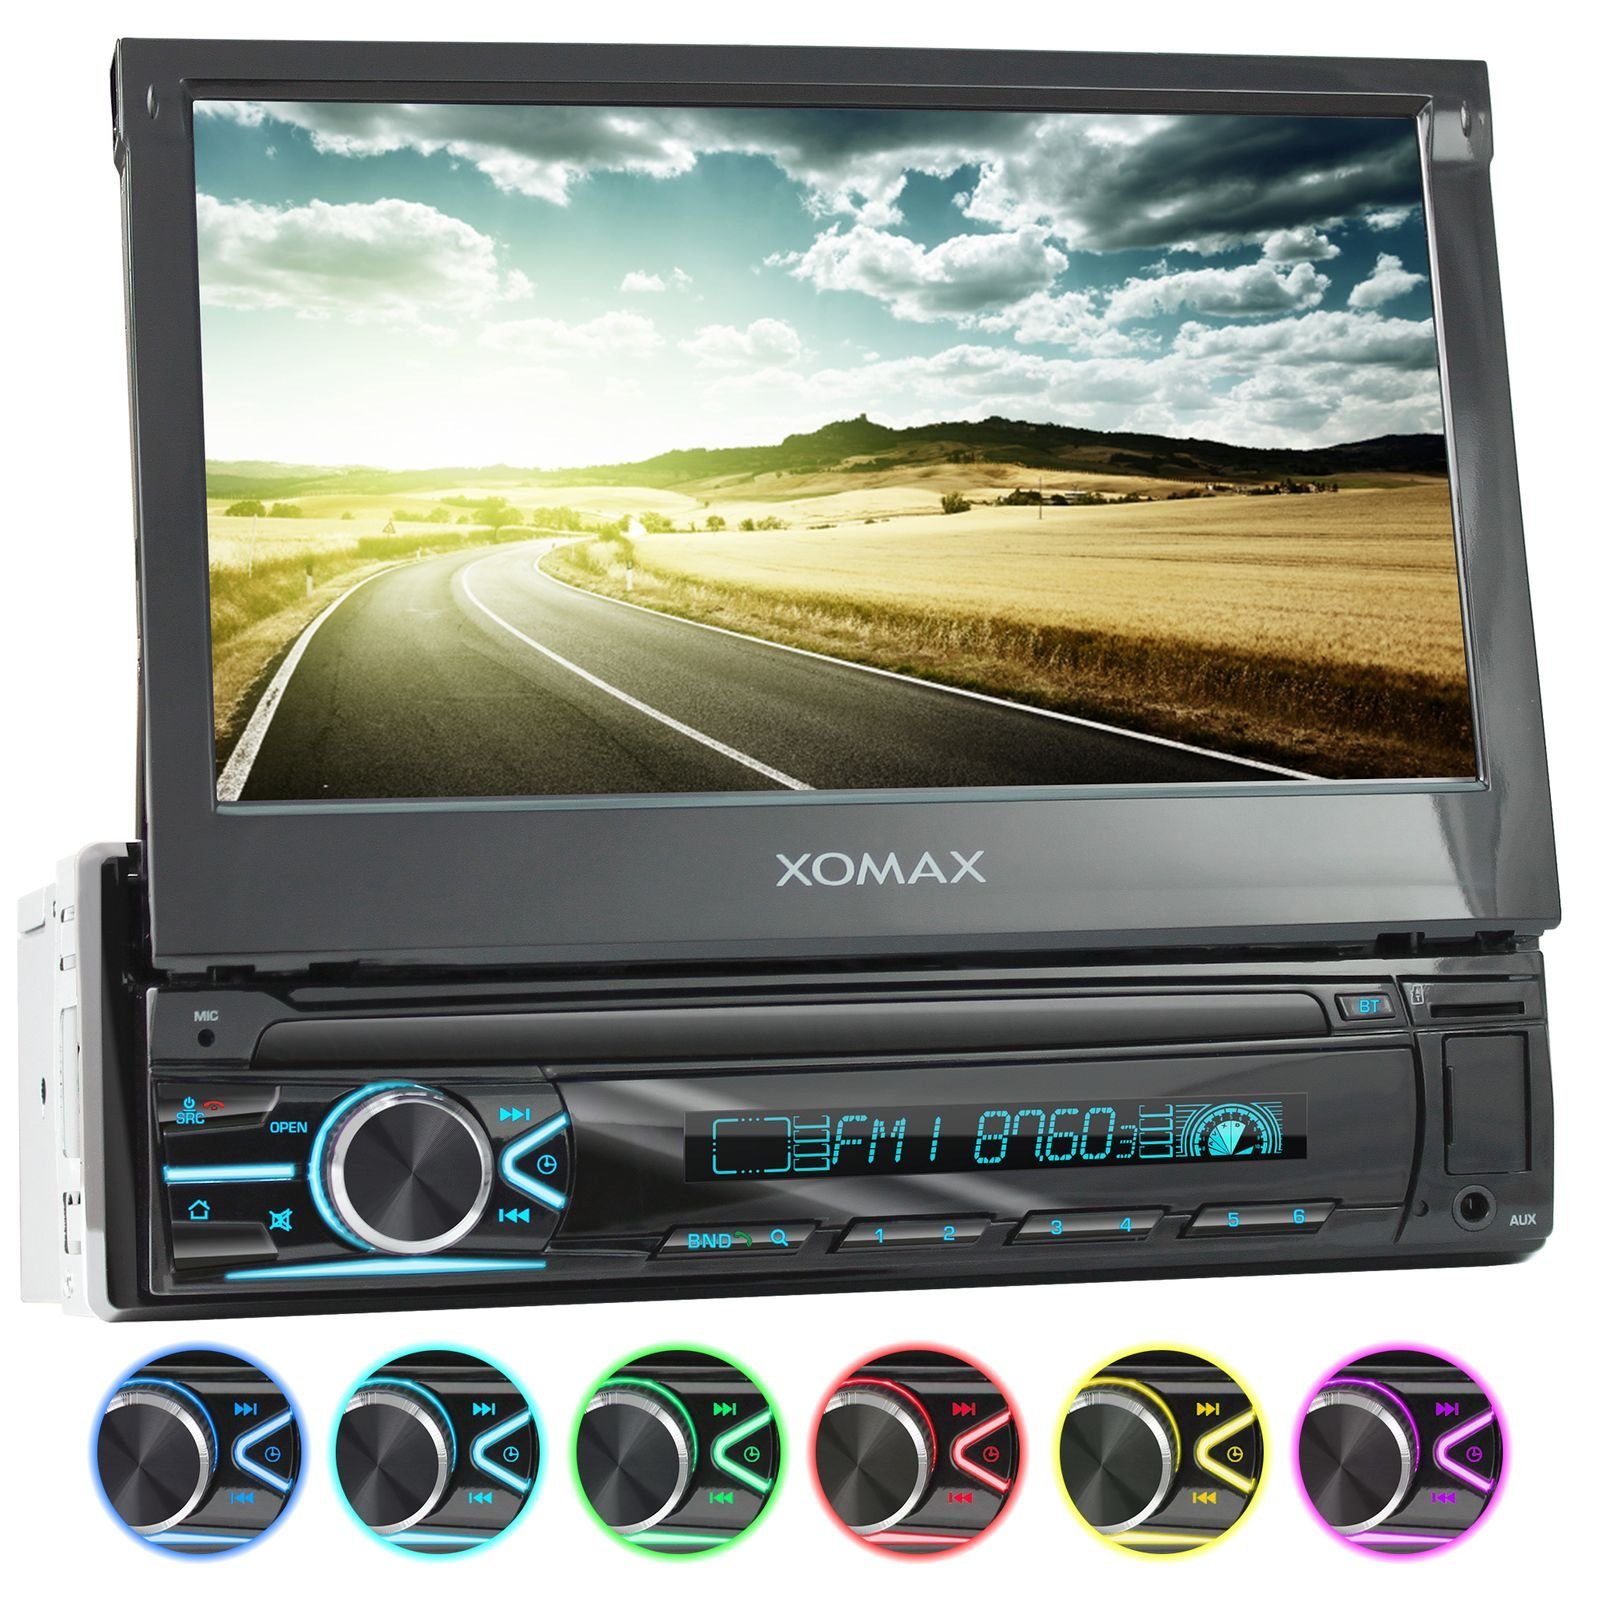 XOMAX XM-2R421 Autoradio mit Bluetooth Freisprecheinrichtung, USB und  AUX-IN, 2 DIN